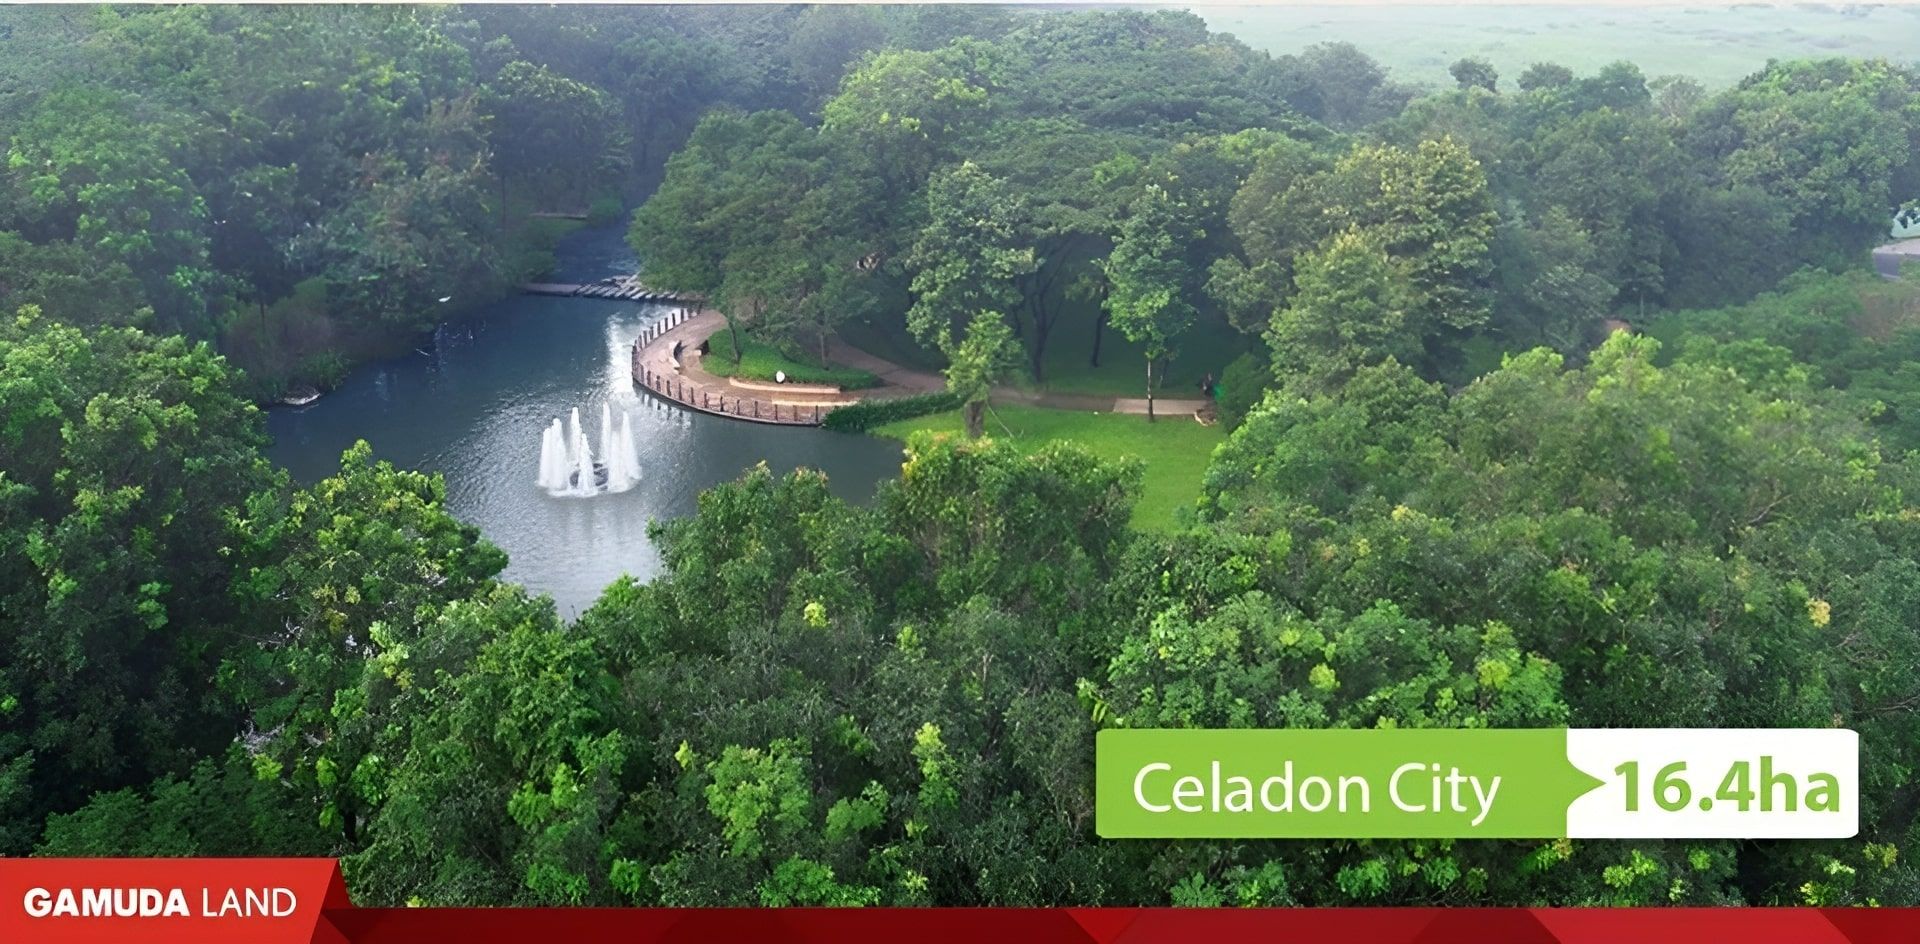 Celadon City sở hữu công viên xanh rộng hơn 16 ha